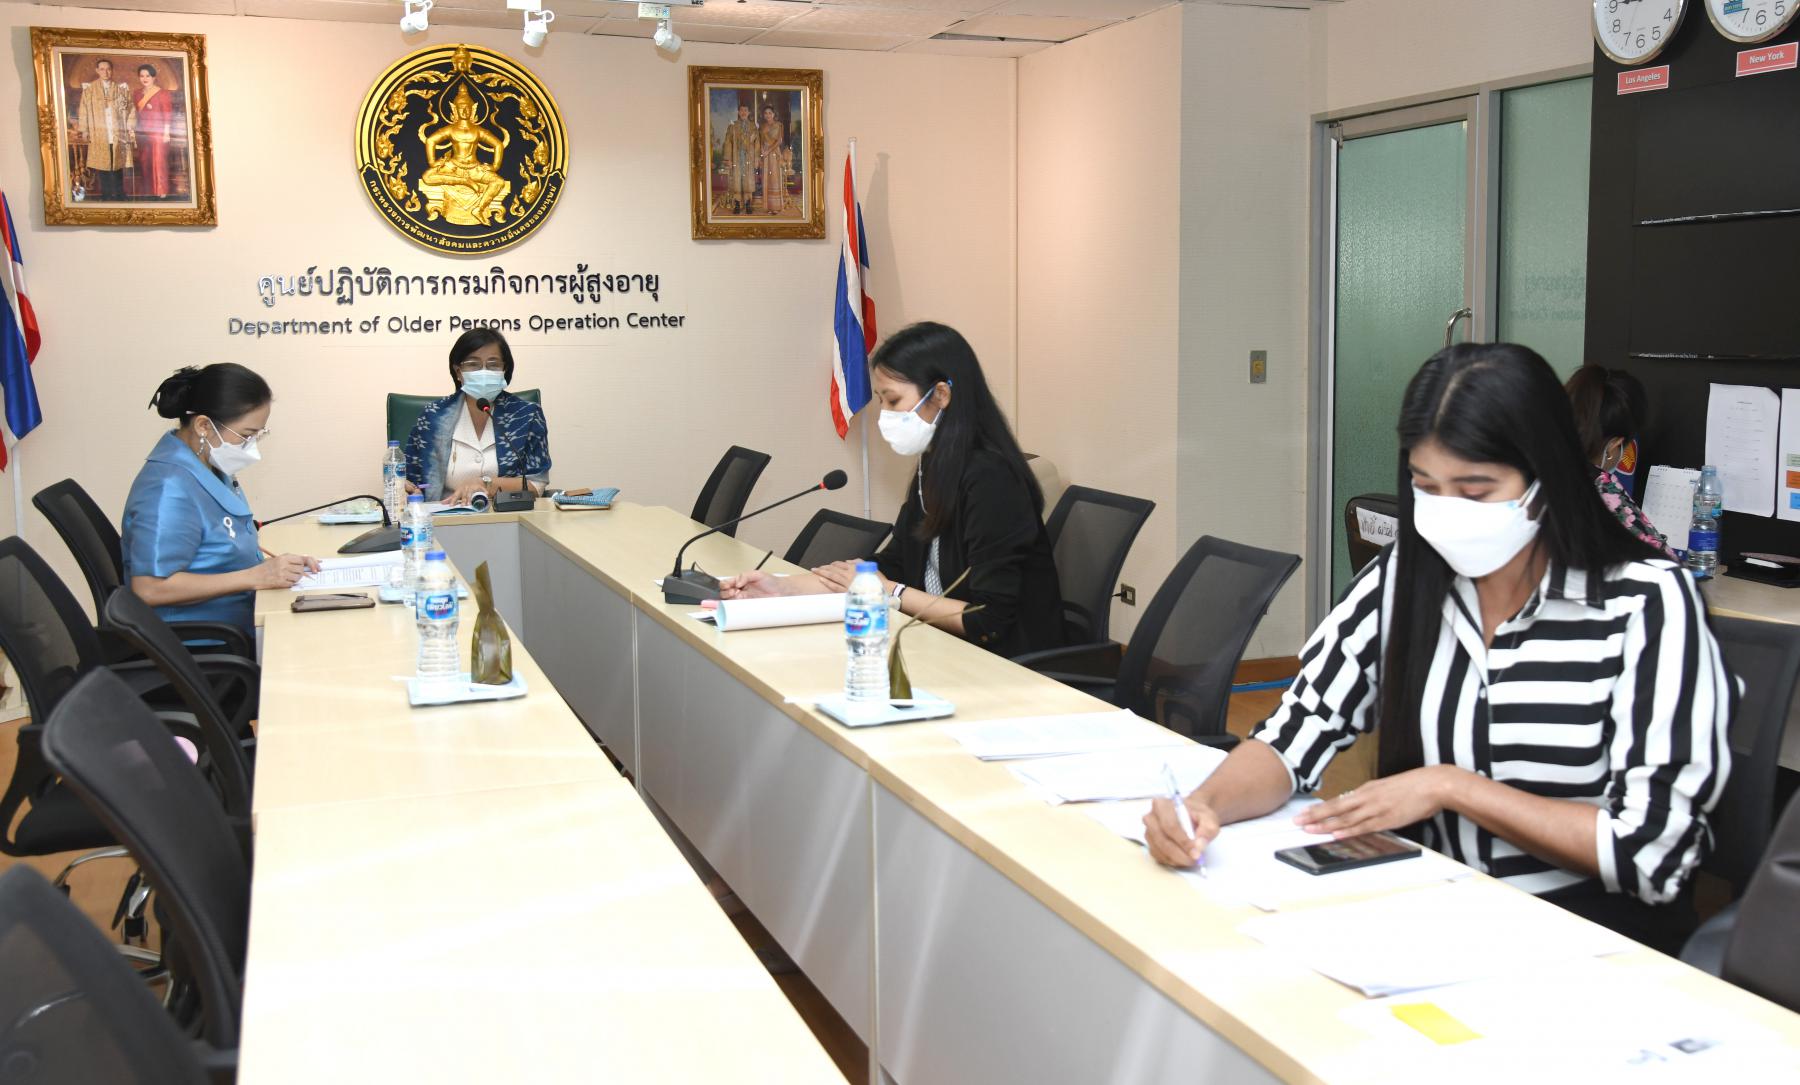 การประชุมคณะทำงานจัดประกวดหนังสั้น ภายใต้คณะทำงานจัดสมัชชาผู้สูงอายุระดับชาติ ปี 2564 ครั้งที่ 3/2564 (สมัชชาสังคมสูงวัยคนไทยอายุยืน)